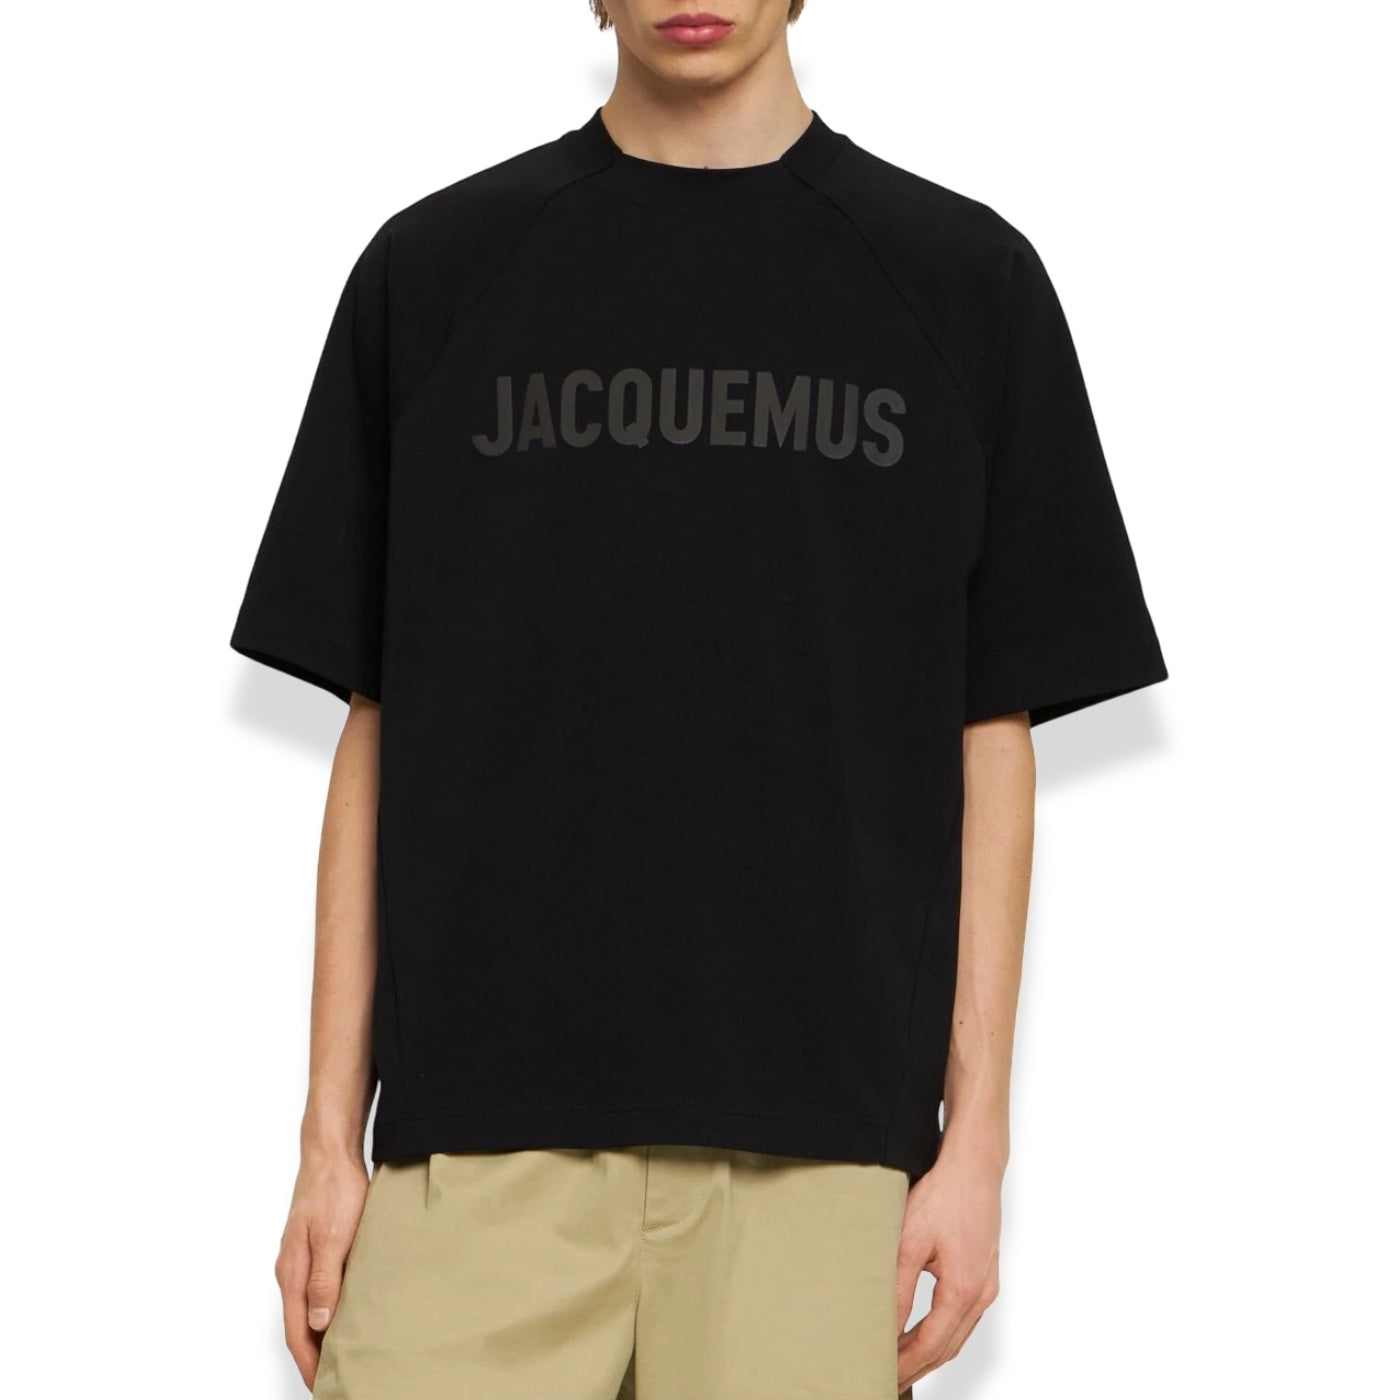 Jacquemus - Le Typo Logo Tee Black